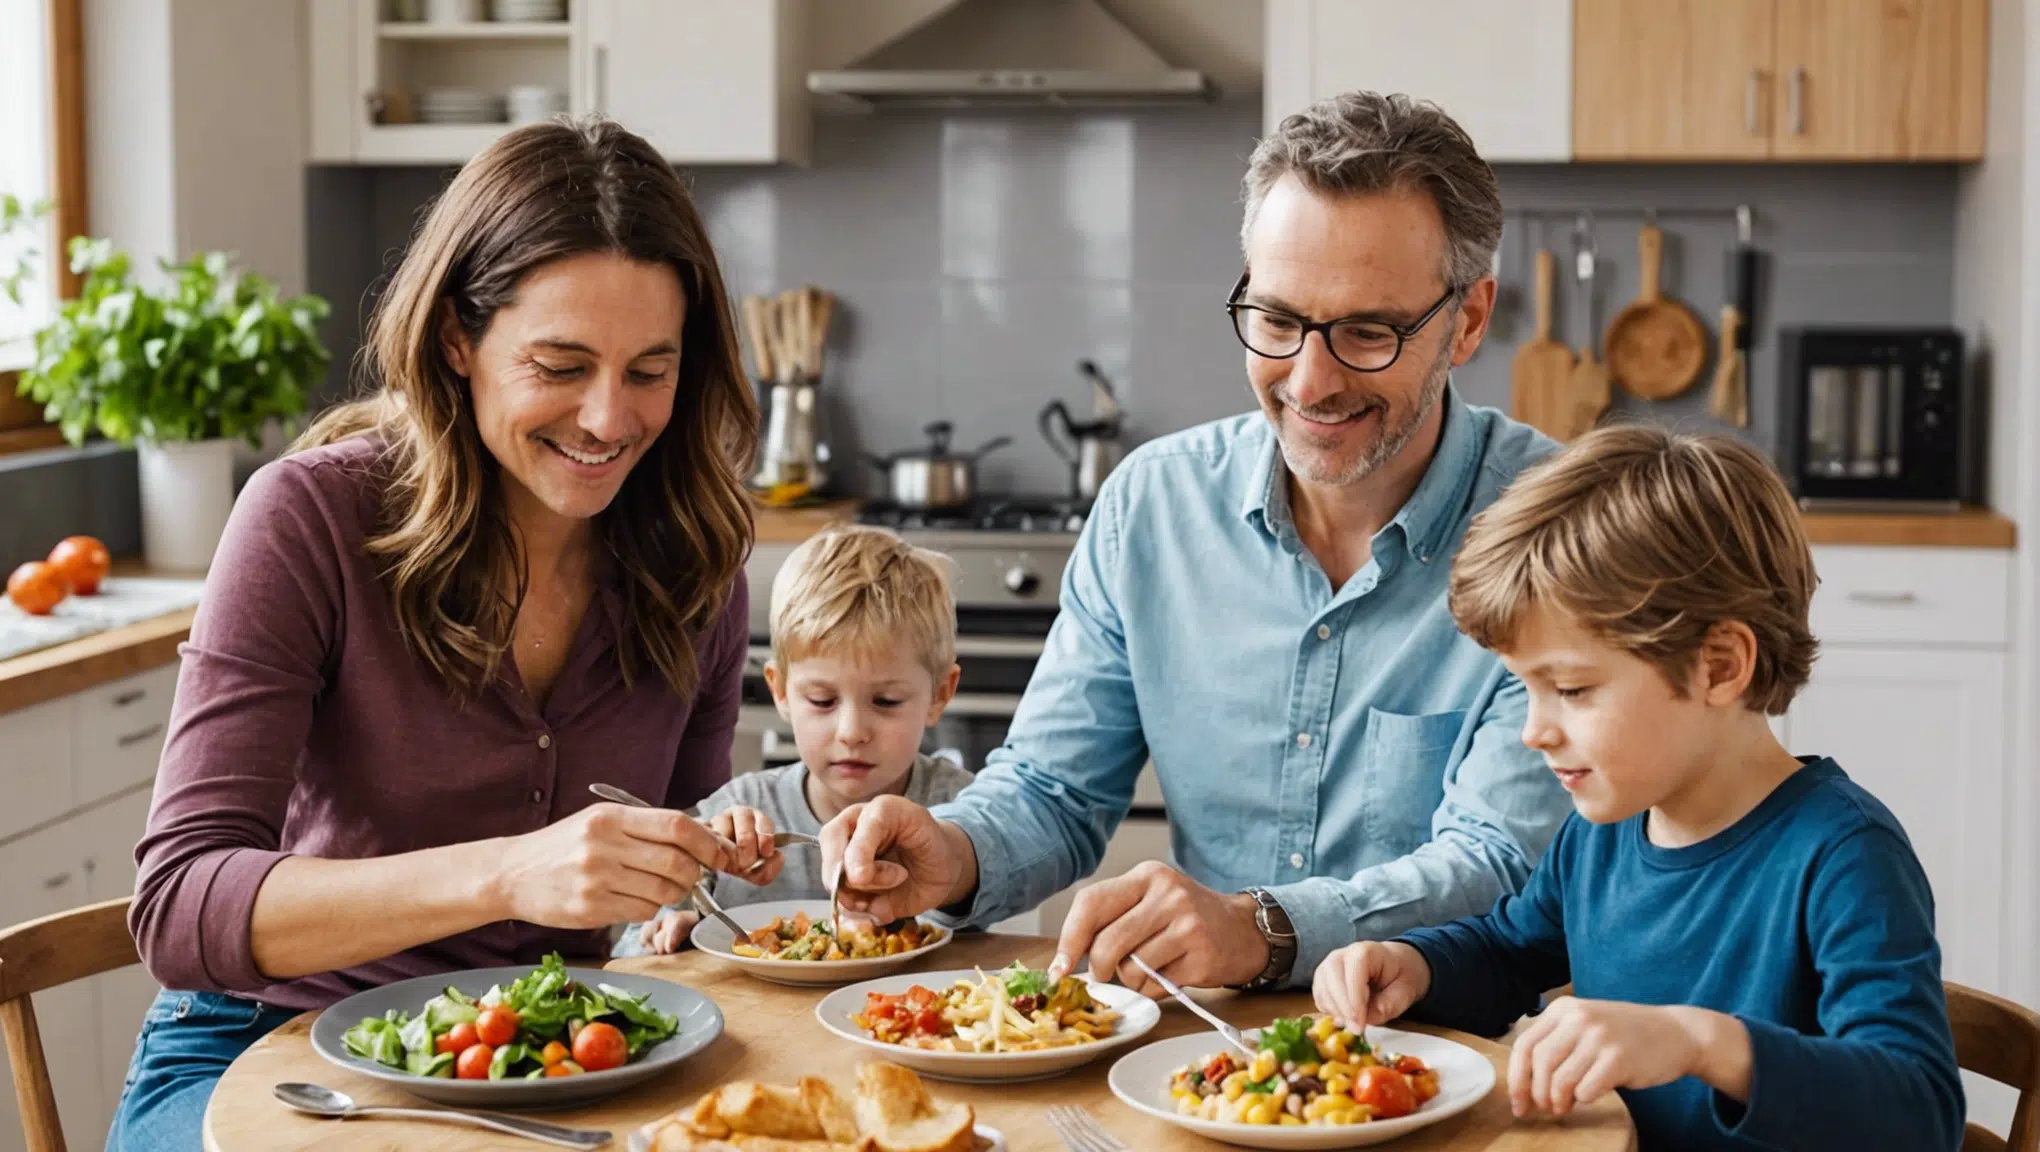 découvrez des idées de jeux en cuisine pour rendre les repas familiaux ludiques et agréables. des activités ludiques pour cuisiner en famille et partager des moments conviviaux.